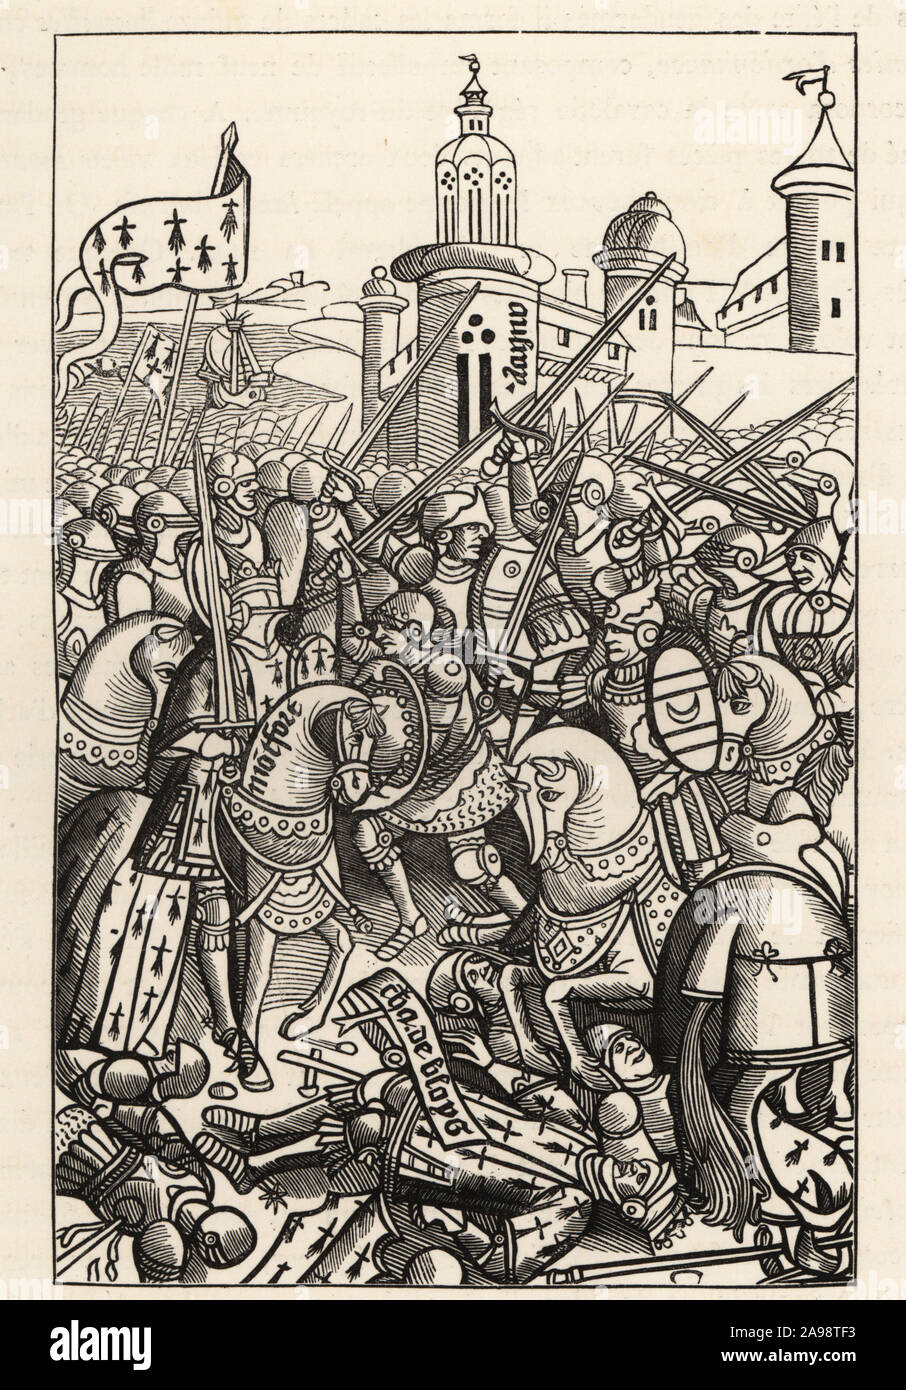 La bataille d'Auray, 1364, entre Jean de Montfort et Charles de Blois, où Bertrand du Guesclin fut capturé par Chandos. Gravure sur bois d'Alain Bouchard, Chroniques de Bretagne, 1514. Batallie d'Auray (29 septembre 1364), entre Jean de Montfort et Charles de Blois, dans laquelle Bertrand du Guesclin fut emprisonné par Chandos. Gravure sur bois par Etienne Huyot et Jules Huyot de Paul Lacroix's La Vie militaire et religieuse au Moyen Age et a l'Epoque de la Renaissance, la vie militaire et religieuse au Moyen Âge et à la Renaissance, Paris, 1873. Banque D'Images